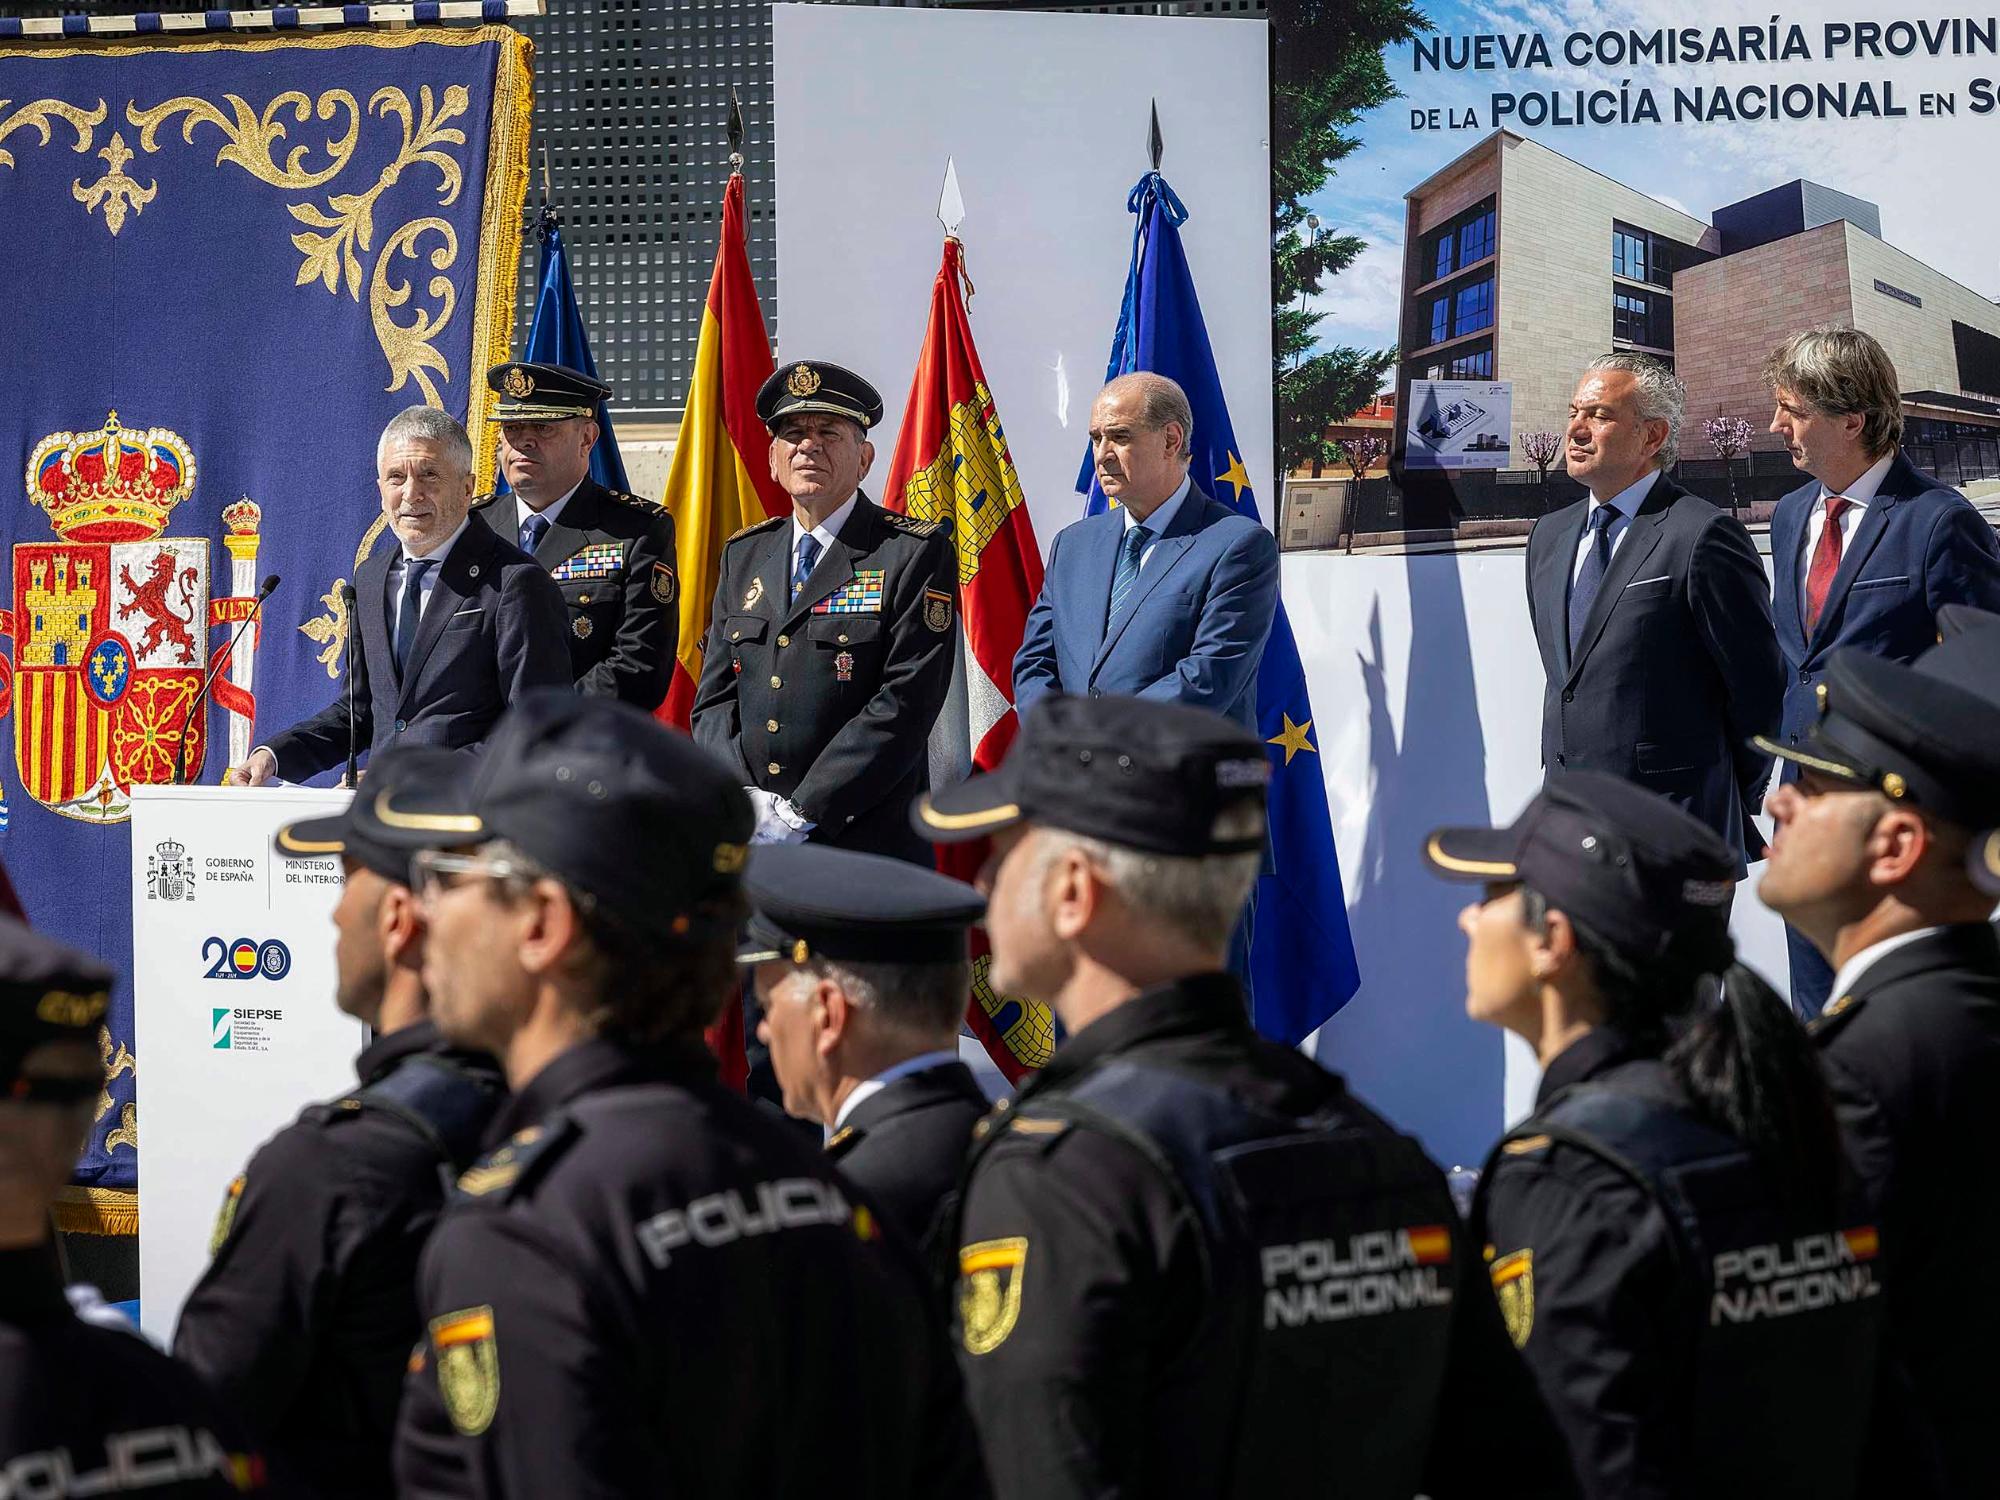 El Ministro de Interior, Fernando Grande-Marlaska, en la inauguración de la nueva comisaría provincial de Soria